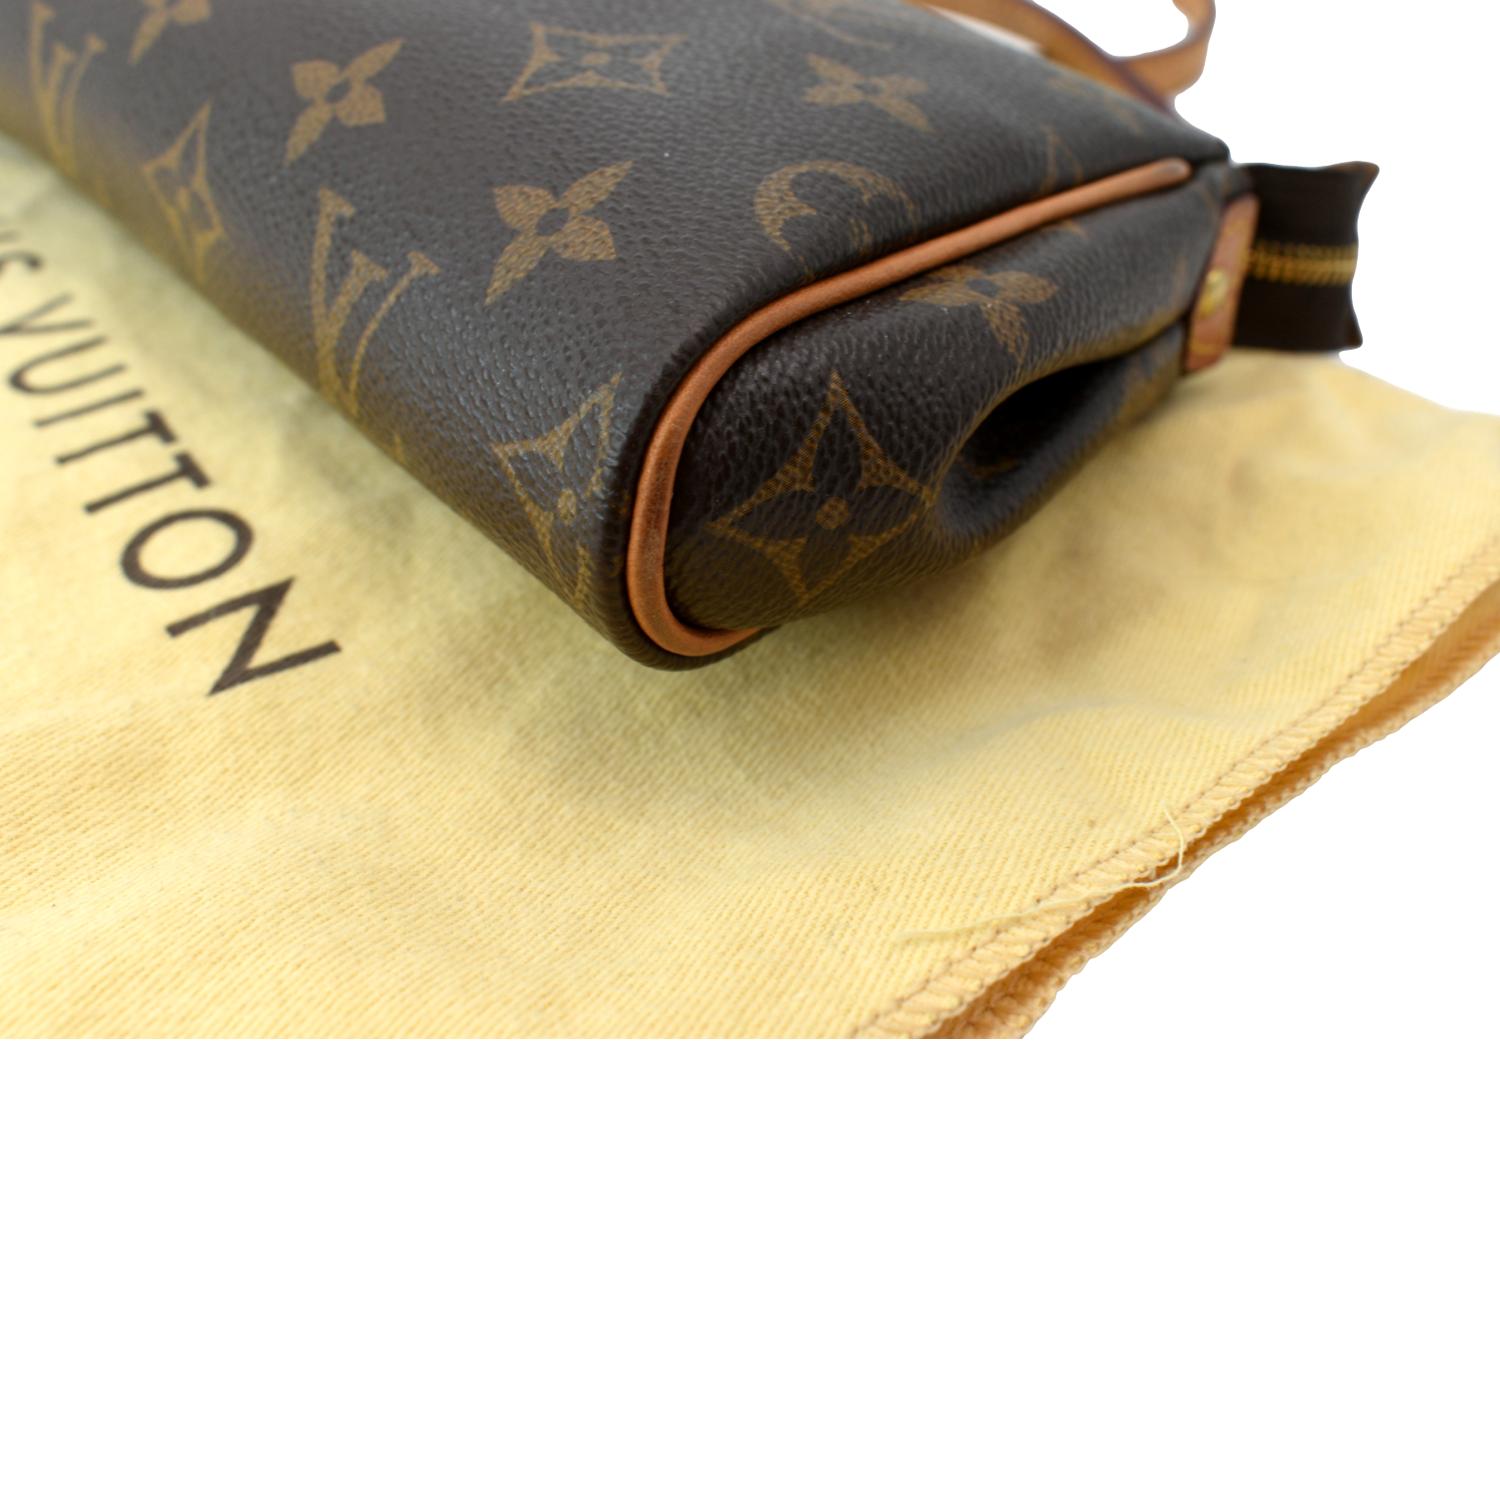 Louis Vuitton Monogram Canvas Eva Pochette Handbag